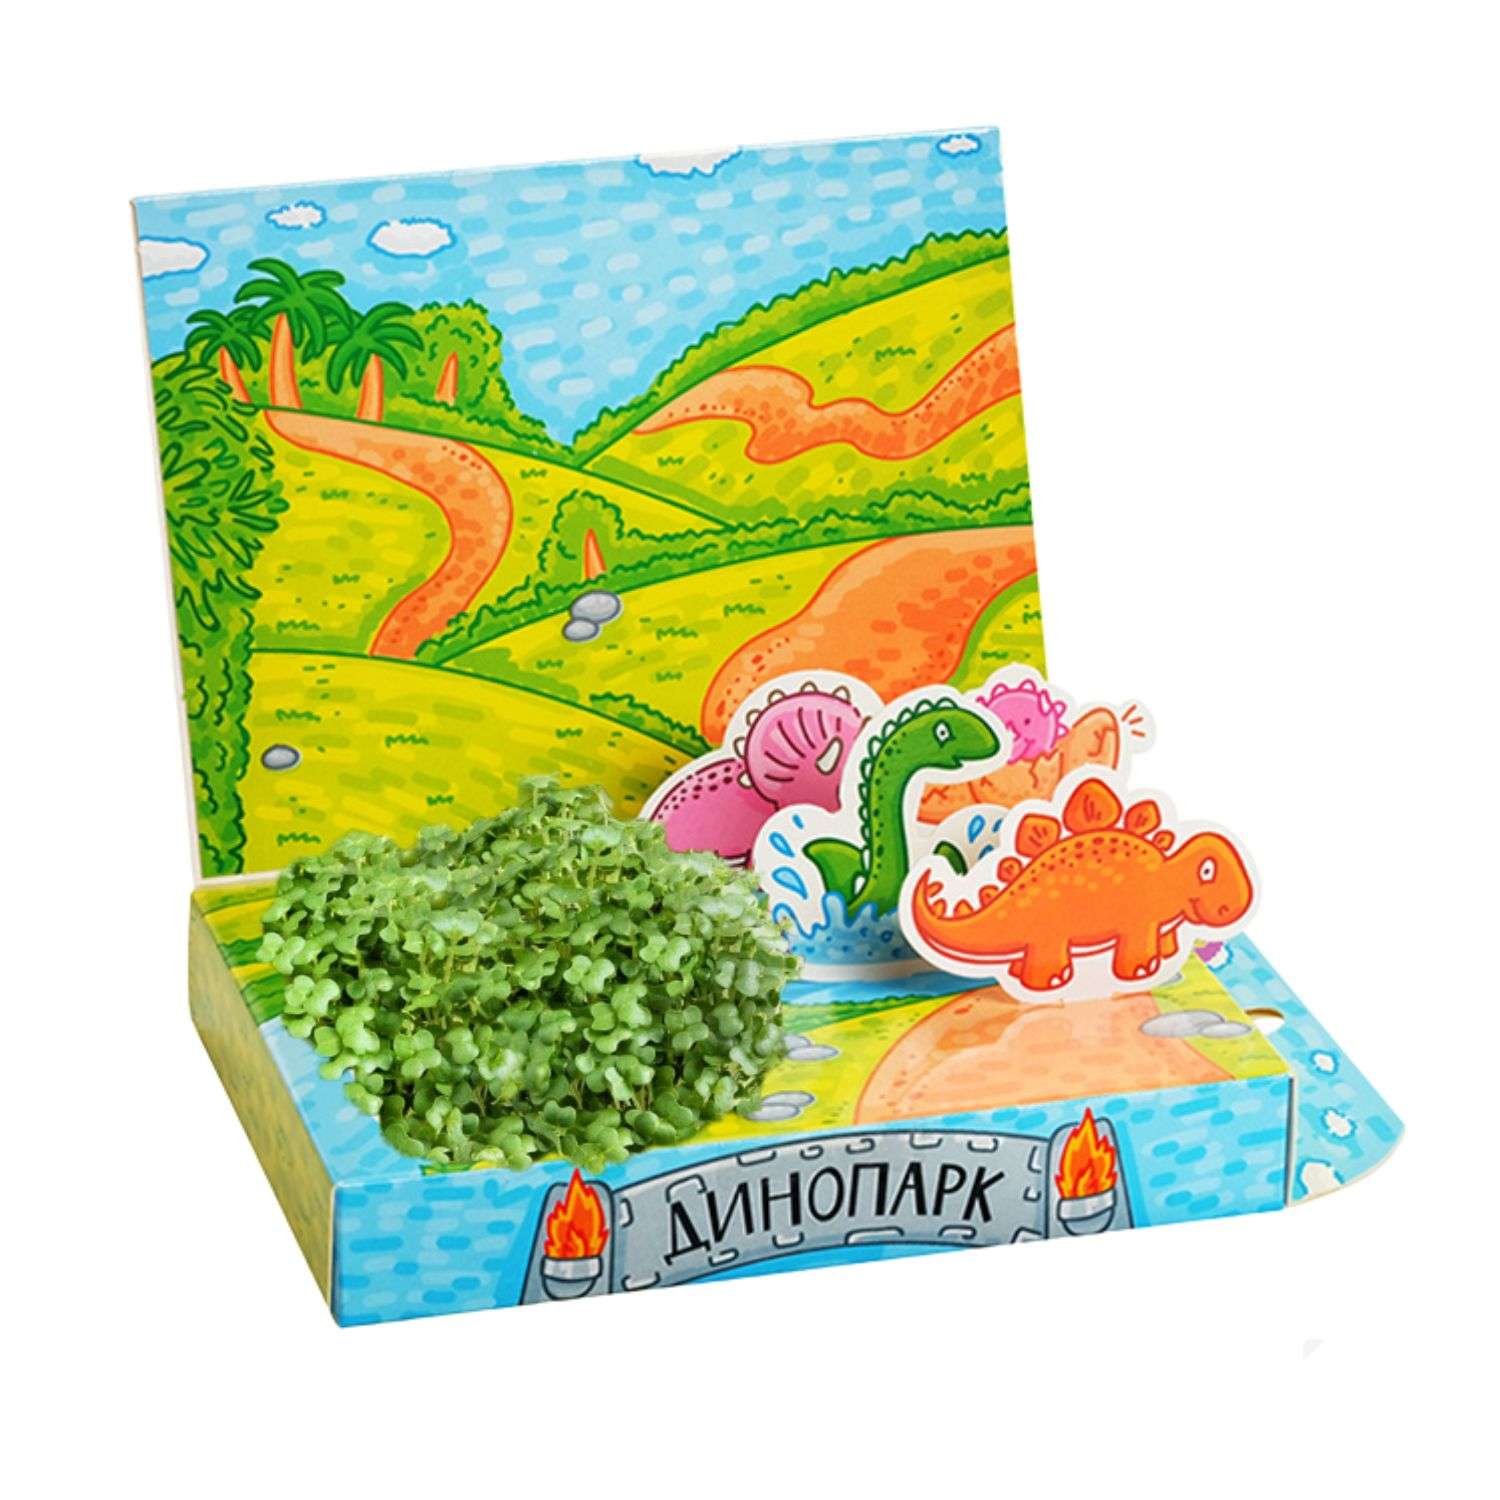 Набор для выращивания Happy Plant Вырасти сам микрозелень Живая открытка Динопарк - фото 2